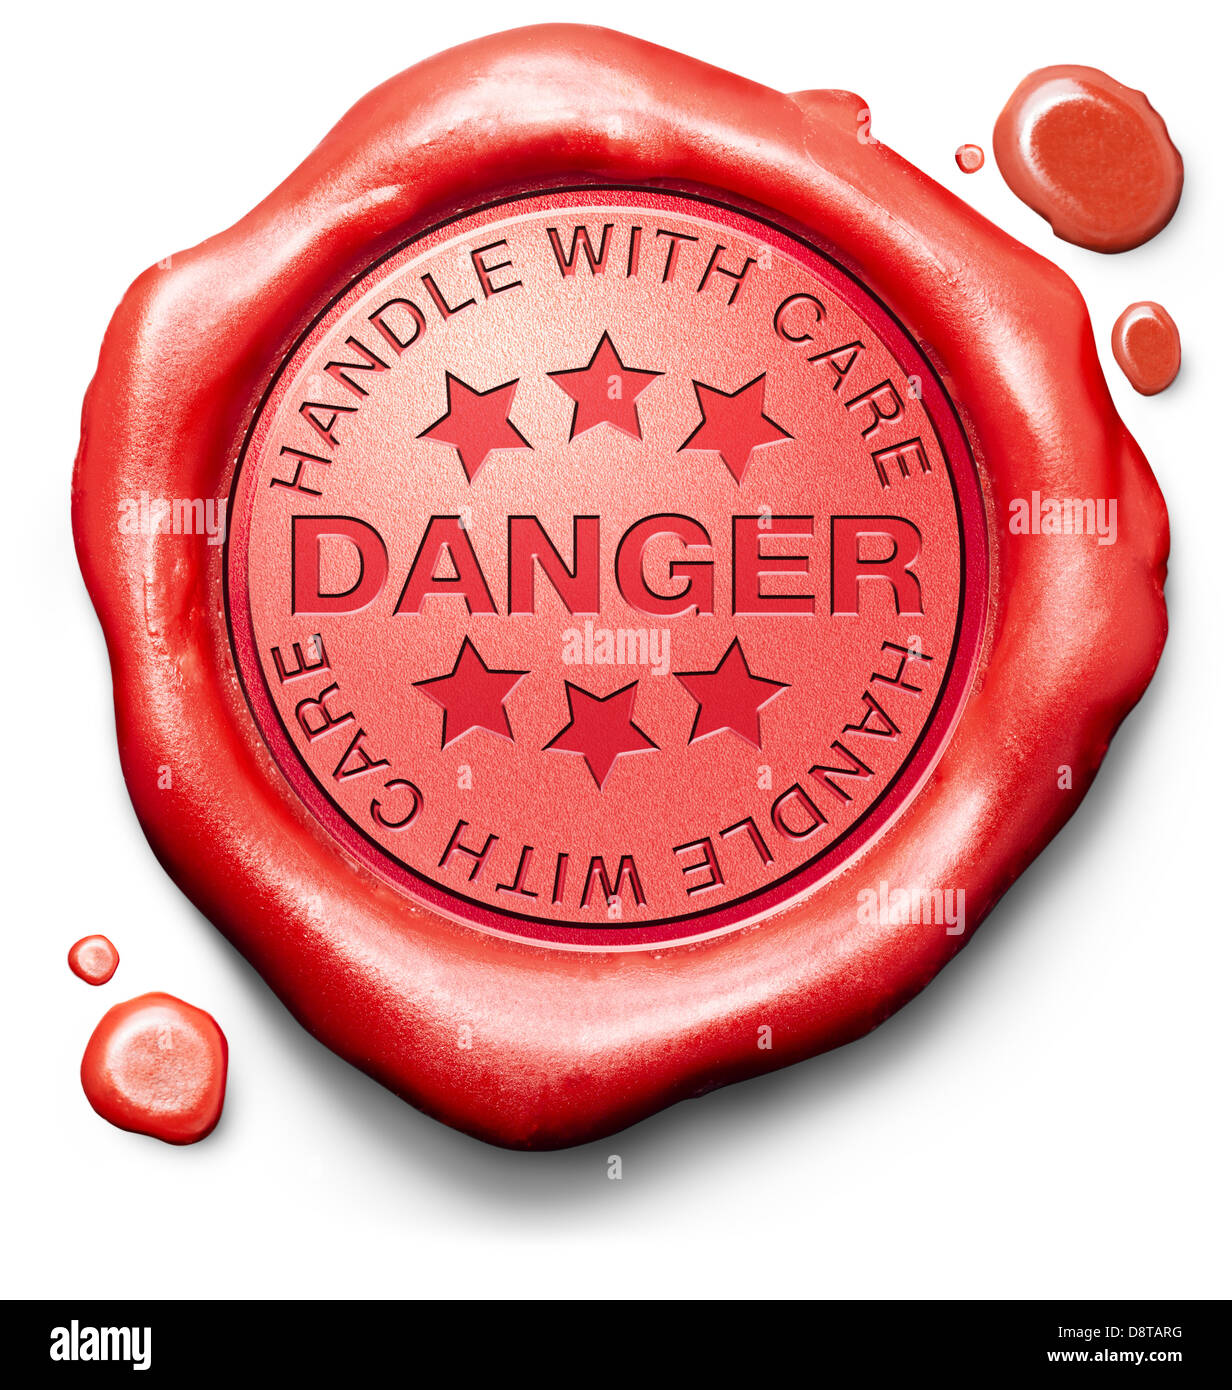 Manejar con cuidado peligro producto peligroso o de la zona roja de advertencia cuidadosa icono de signo o sello Foto de stock